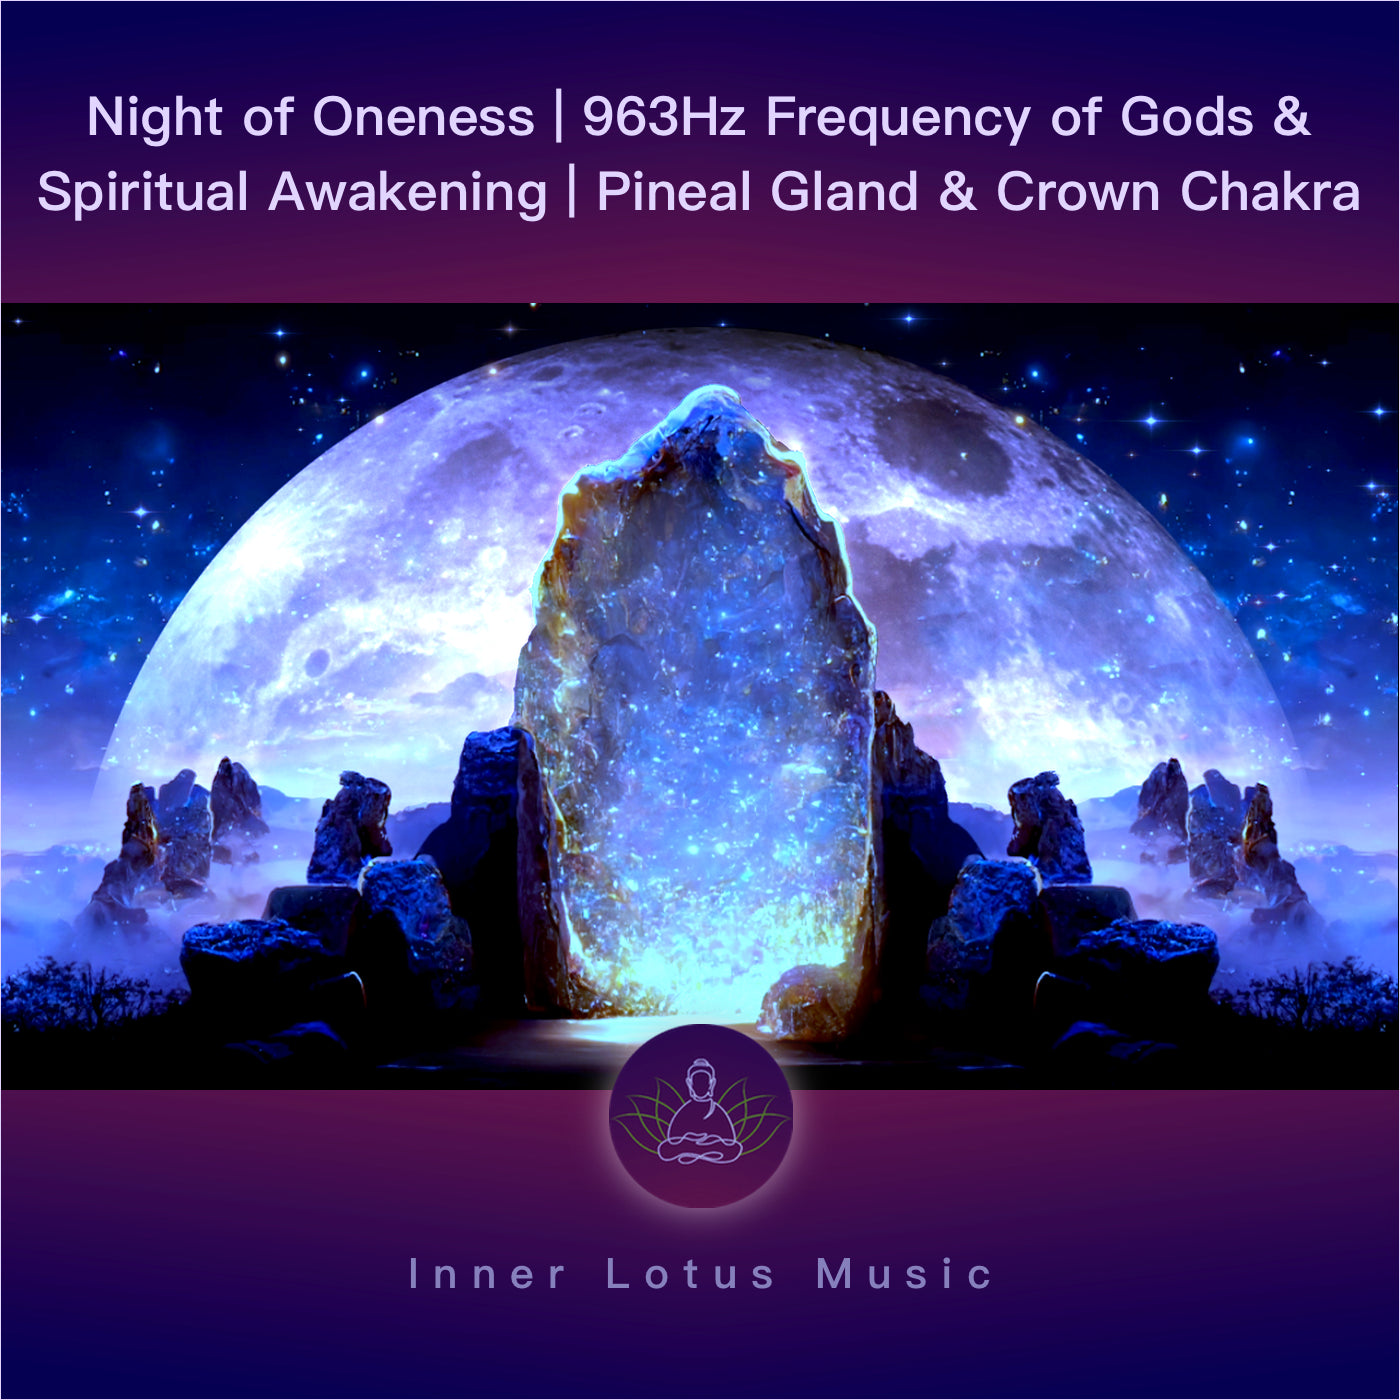 Noche de la Unidad | 963hz Frecuencia de Dios & Despertar Espiritual | Glándula Pineal Chakra Corona